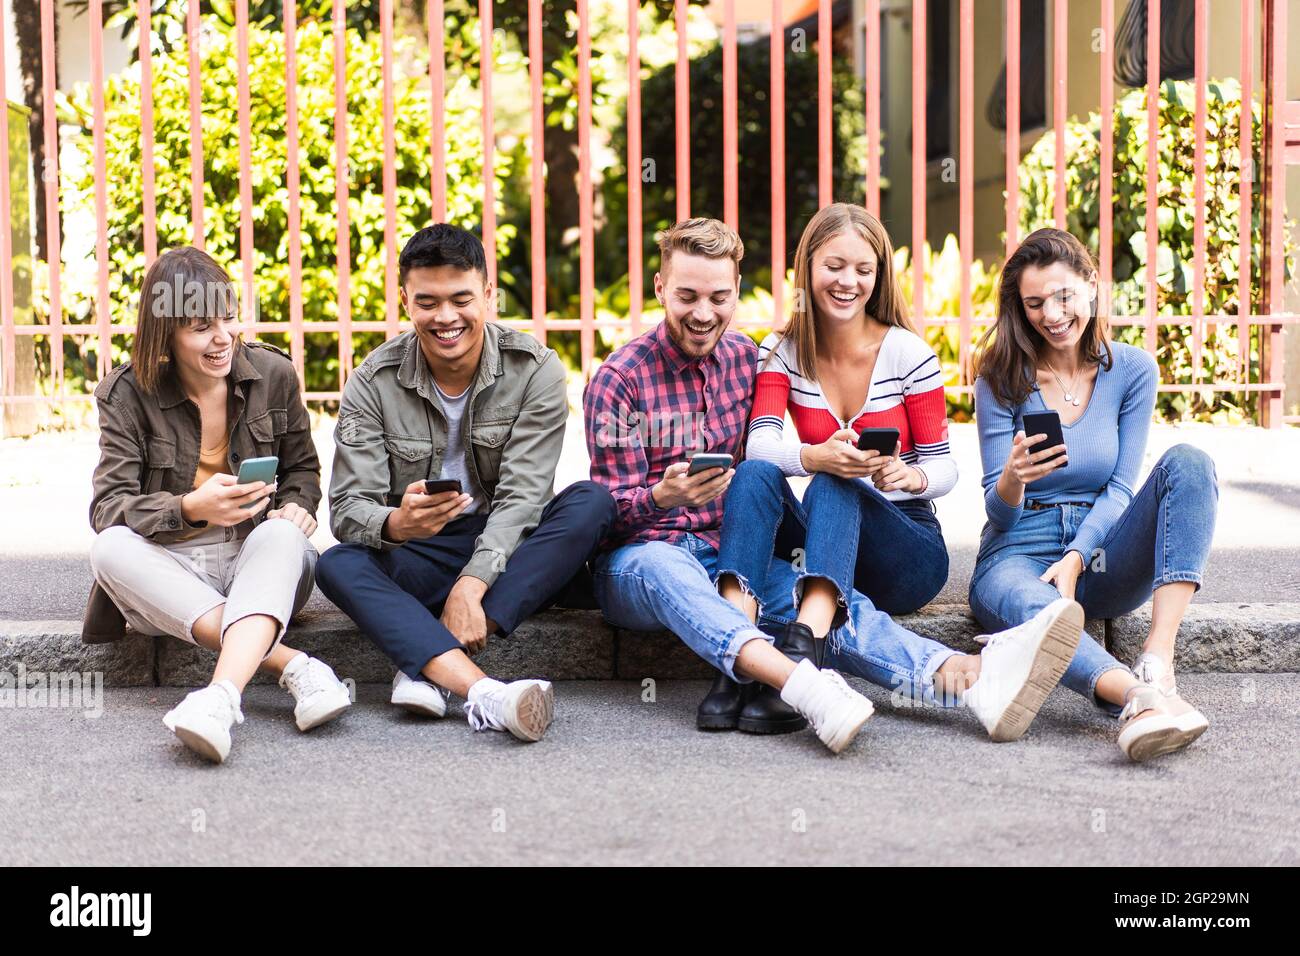 Multikulturelle Freunde lachen mit dem Smartphone auf dem Bürgersteig in der Stadt - Junge Menschen süchtig nach mobilen Smartphones - Technologie concep Stockfoto